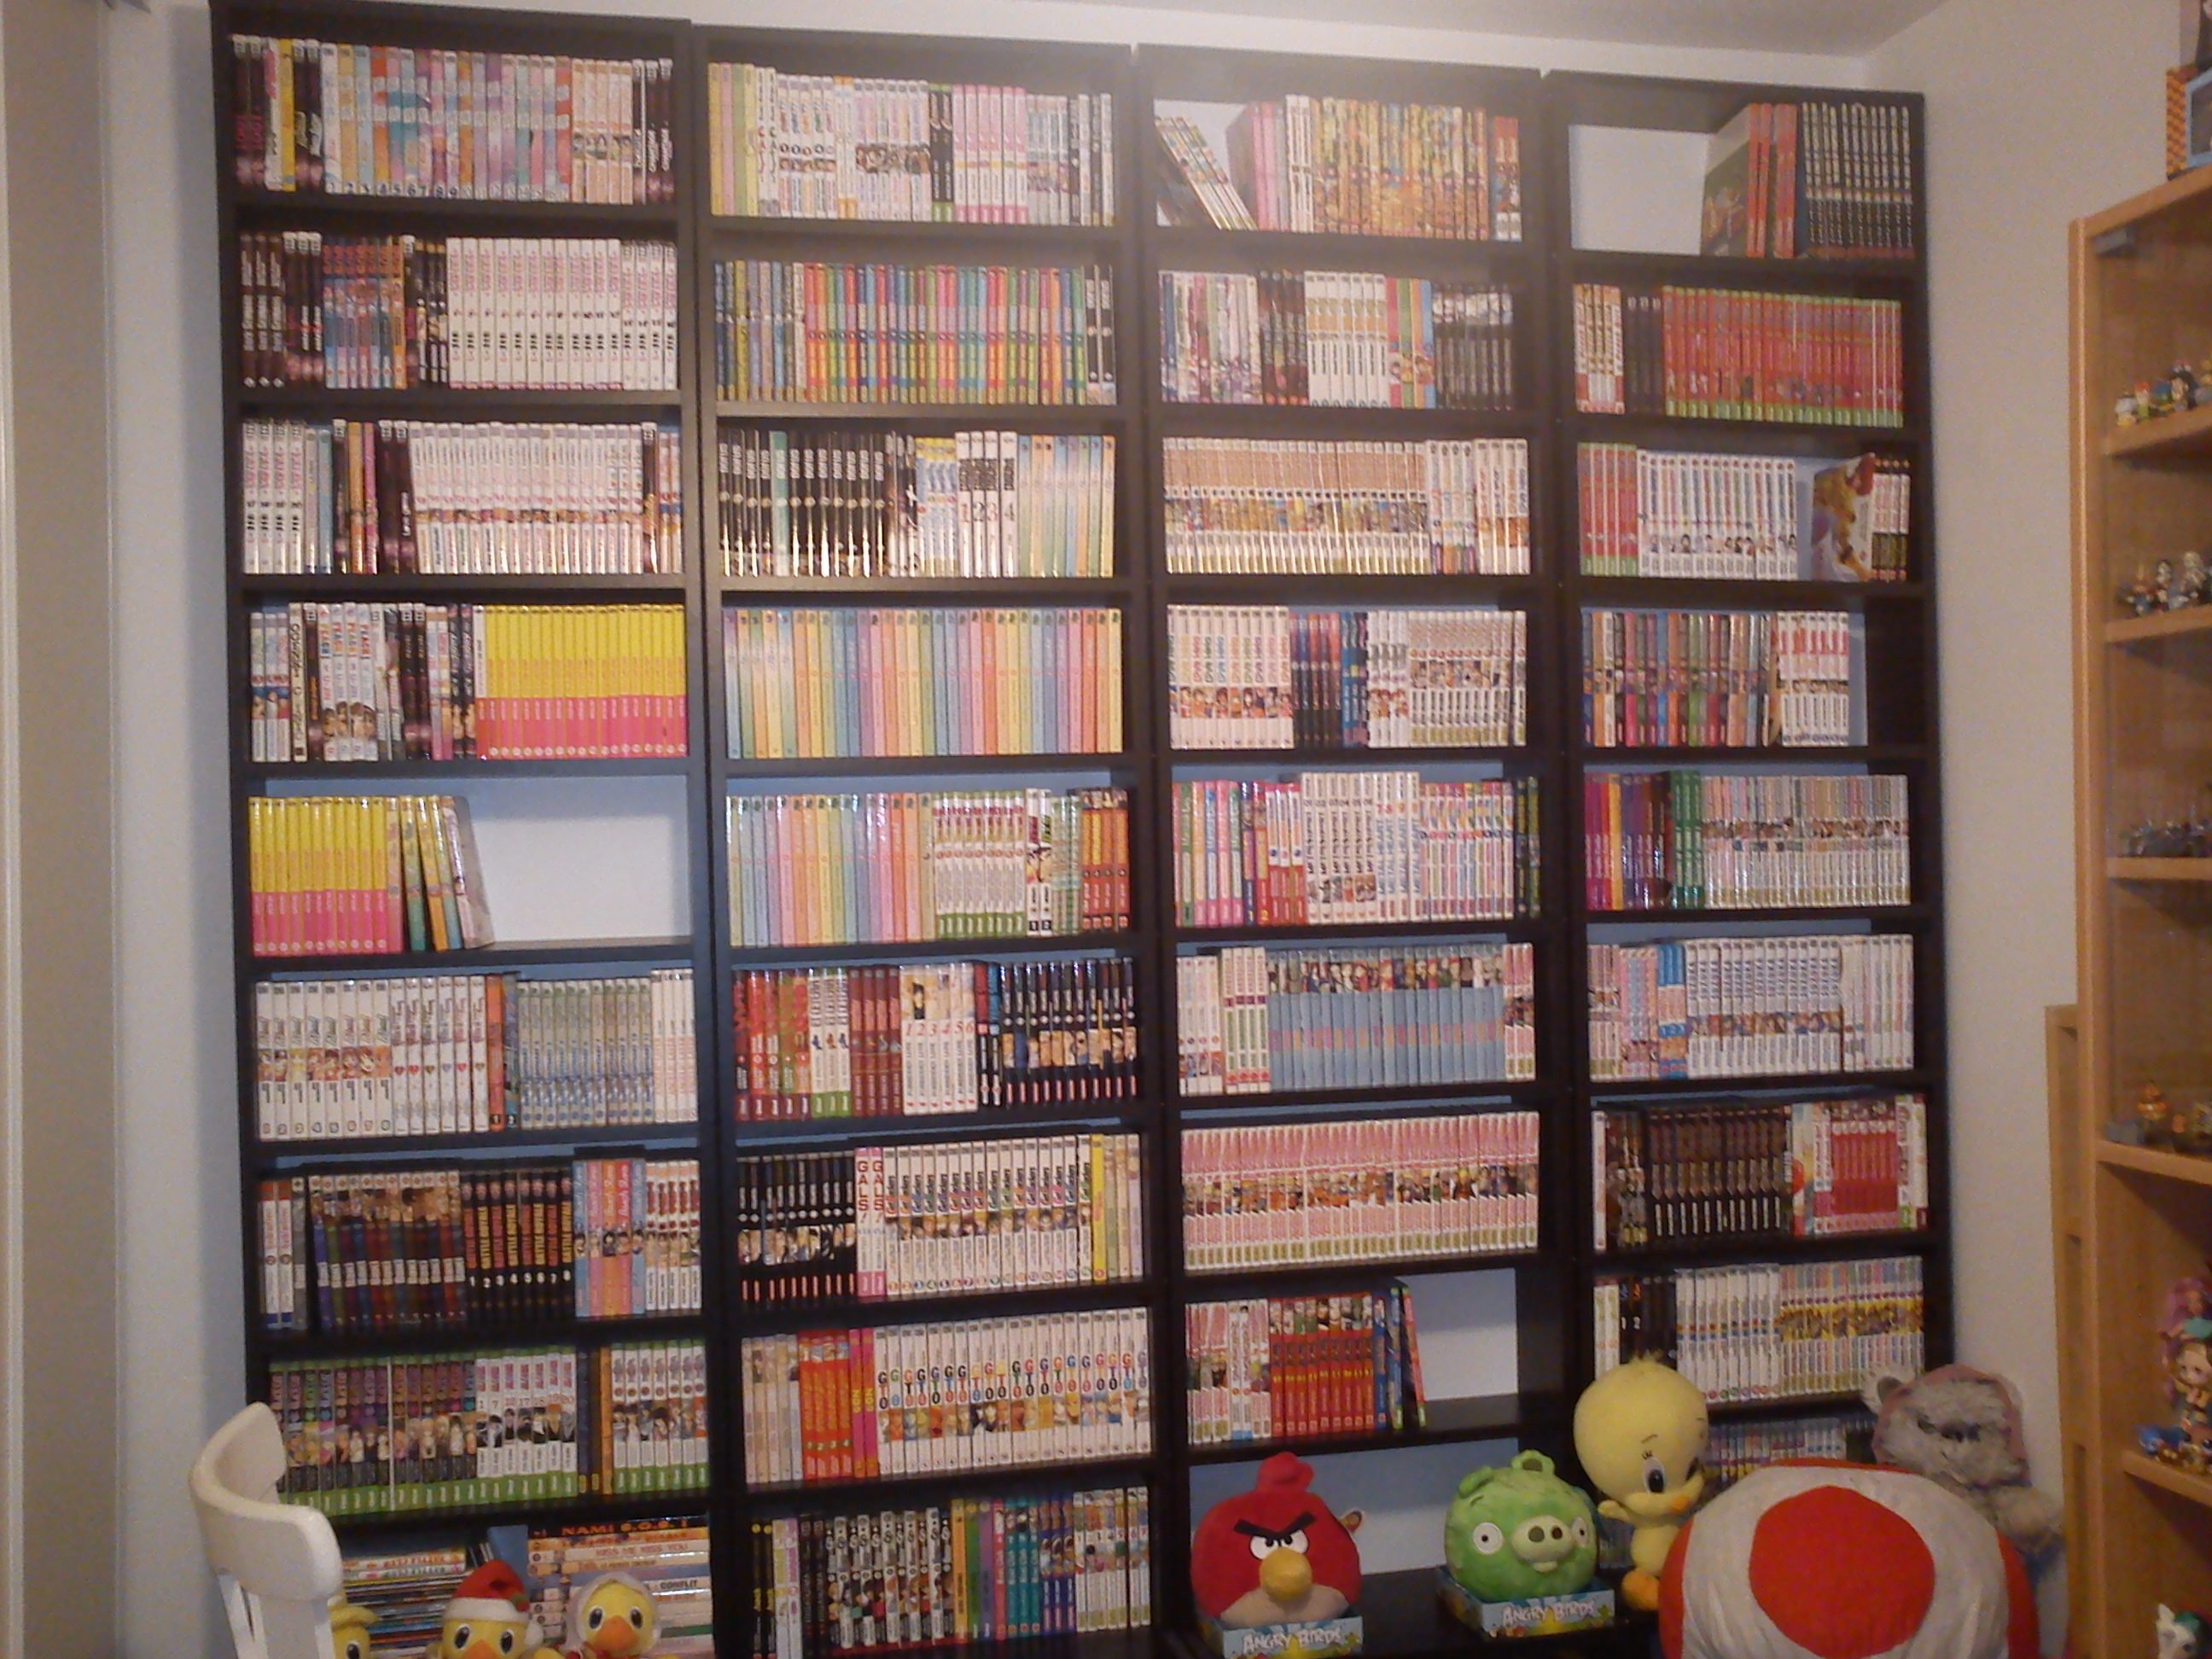 Vds 4 X Bibliotheque Speciale Manga Bd Sur Le Forum Petites Annonces 02 05 2013 18 40 02 Jeuxvideo Com